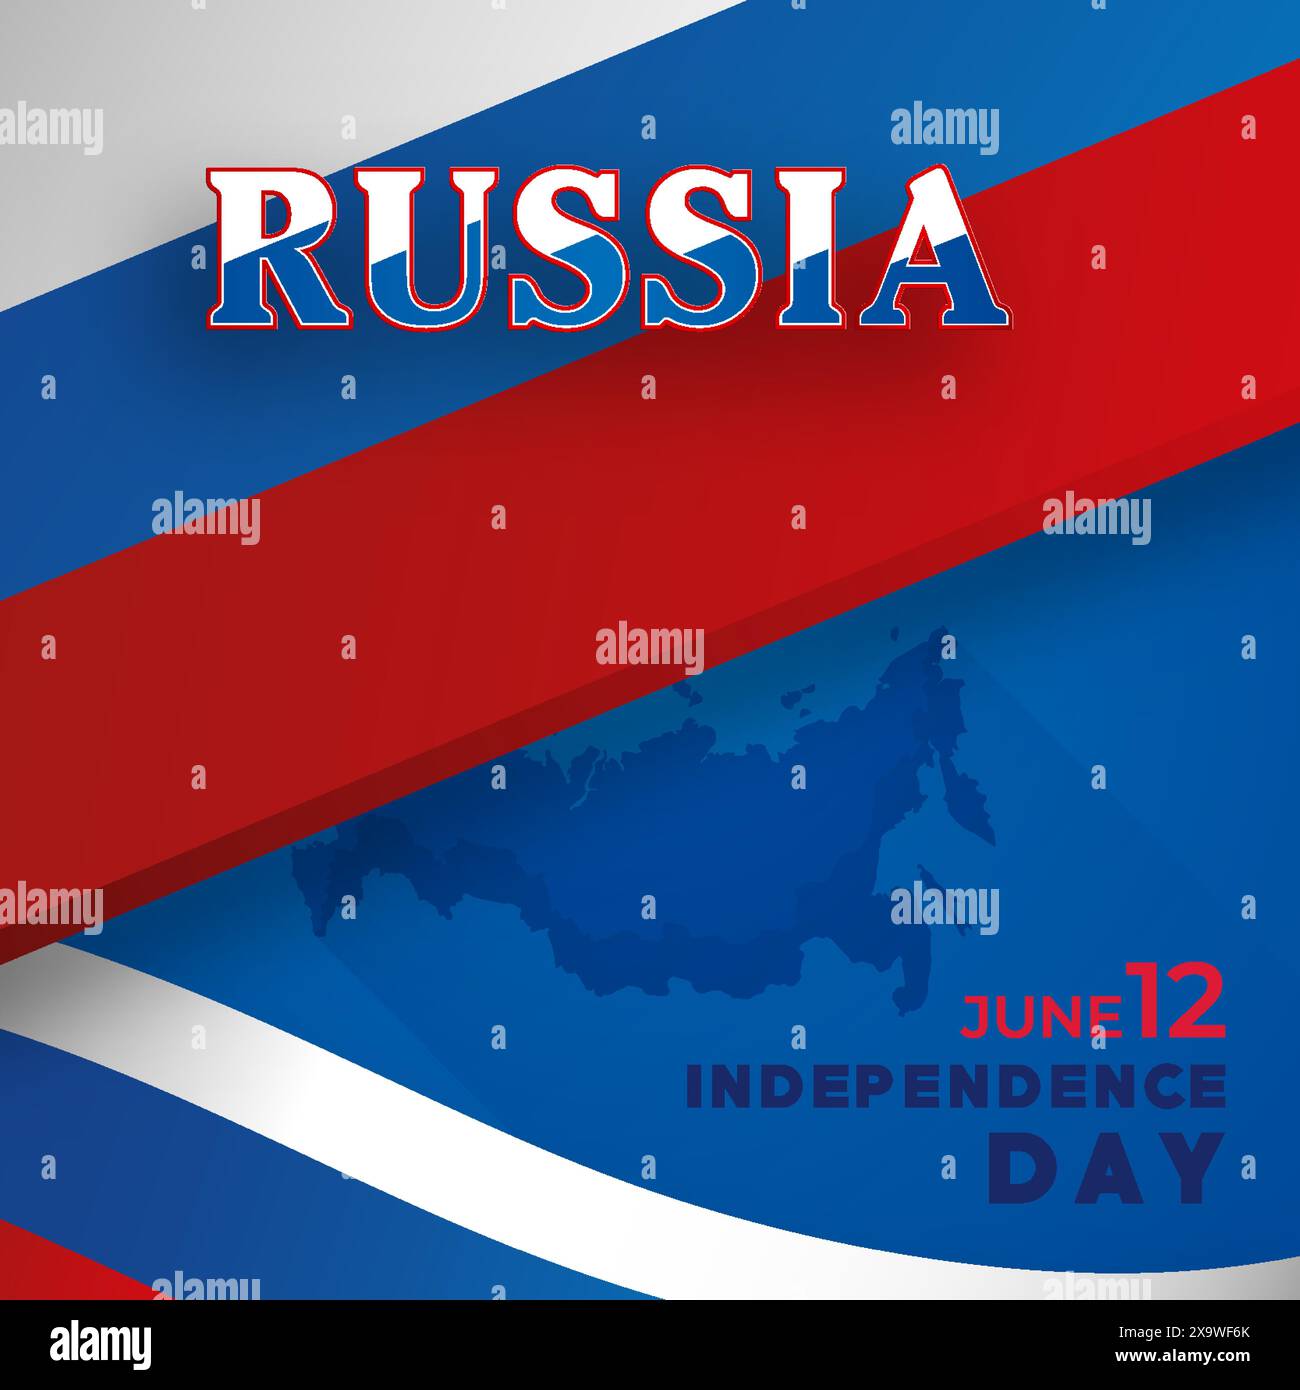 Felice giorno dell'indipendenza della Russia carta con carta blu e rossa taglio stile su sfondo di colore bianco per festivo anniversario nazionale della Russia, sul Illustrazione Vettoriale